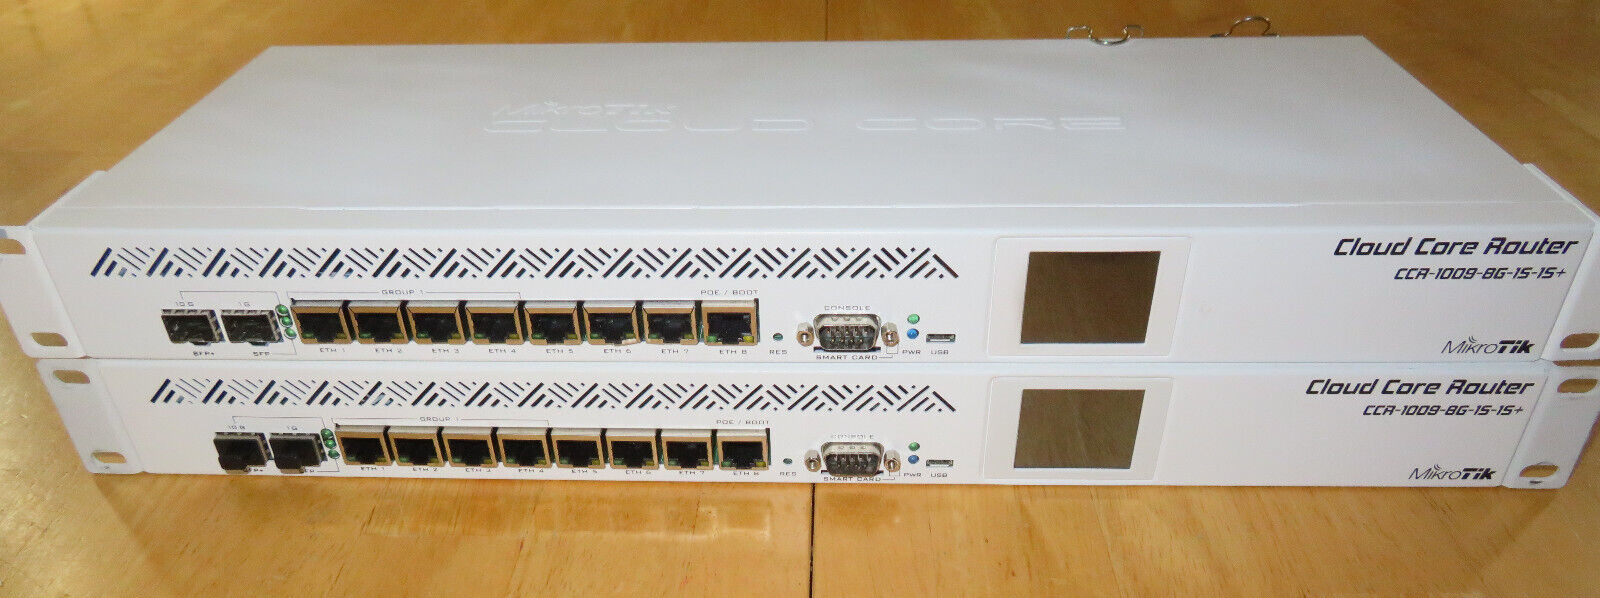 MikroTik CLOUD CORE Router (CCR-1009-8G-1S-1S+)